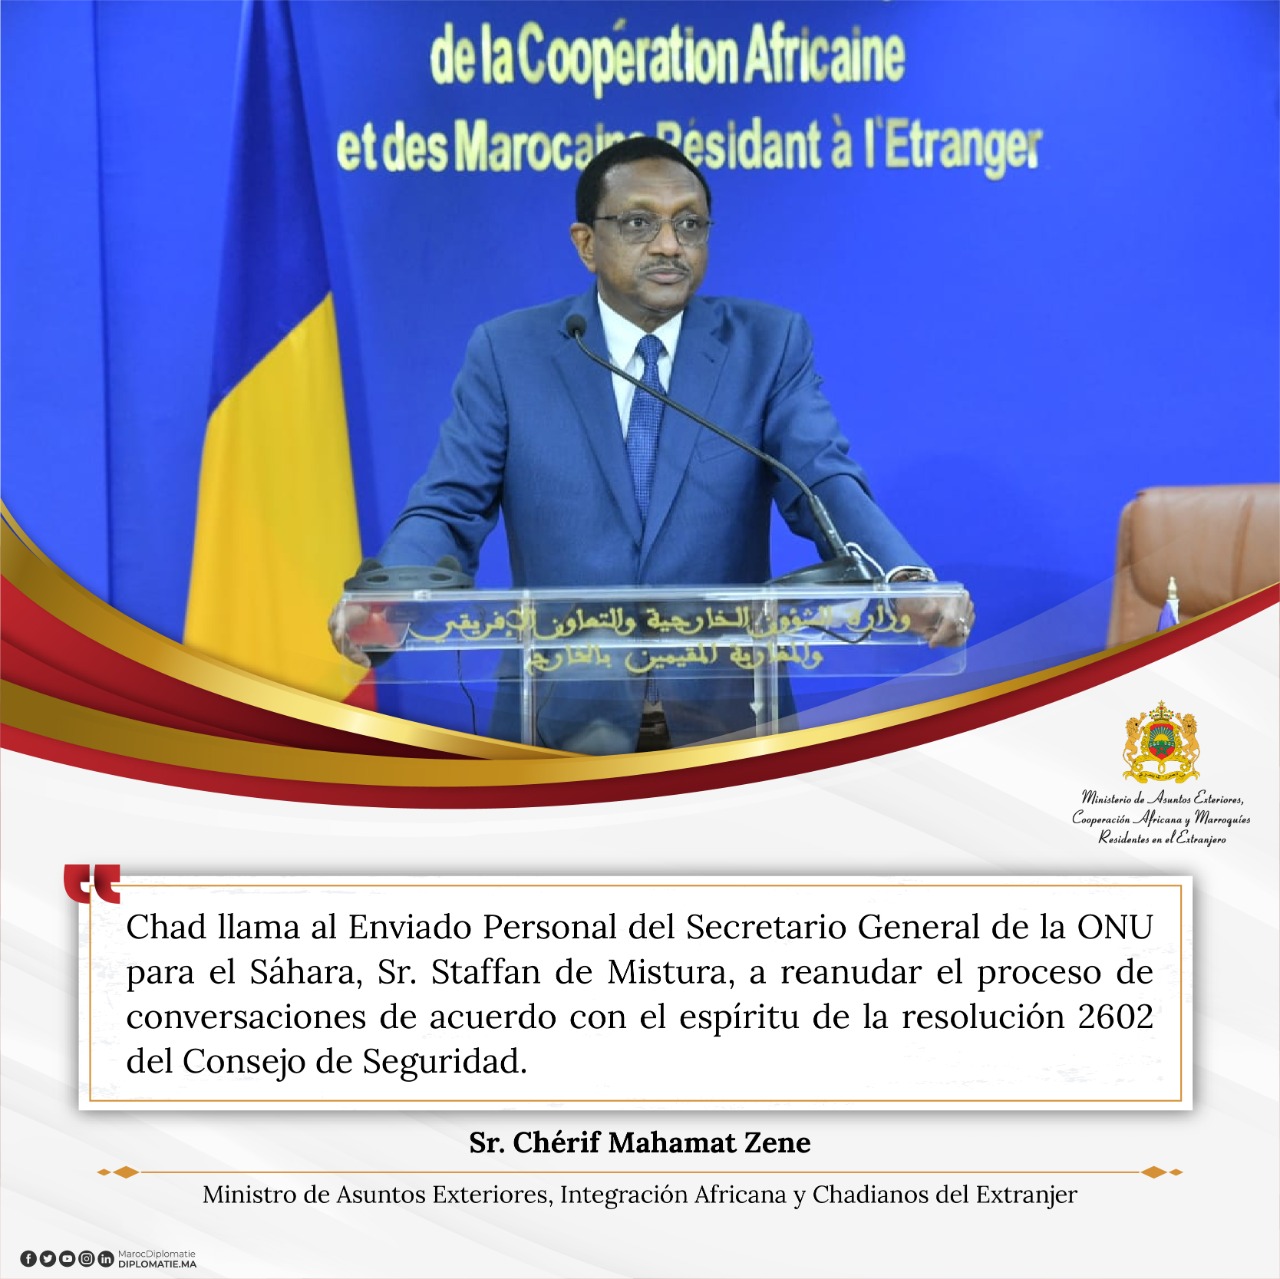 Declaración del Sr. Chérif Mahamat Zene, Ministro de Asuntos Exteriores, Integración Africana y Chadianos del Extranjero